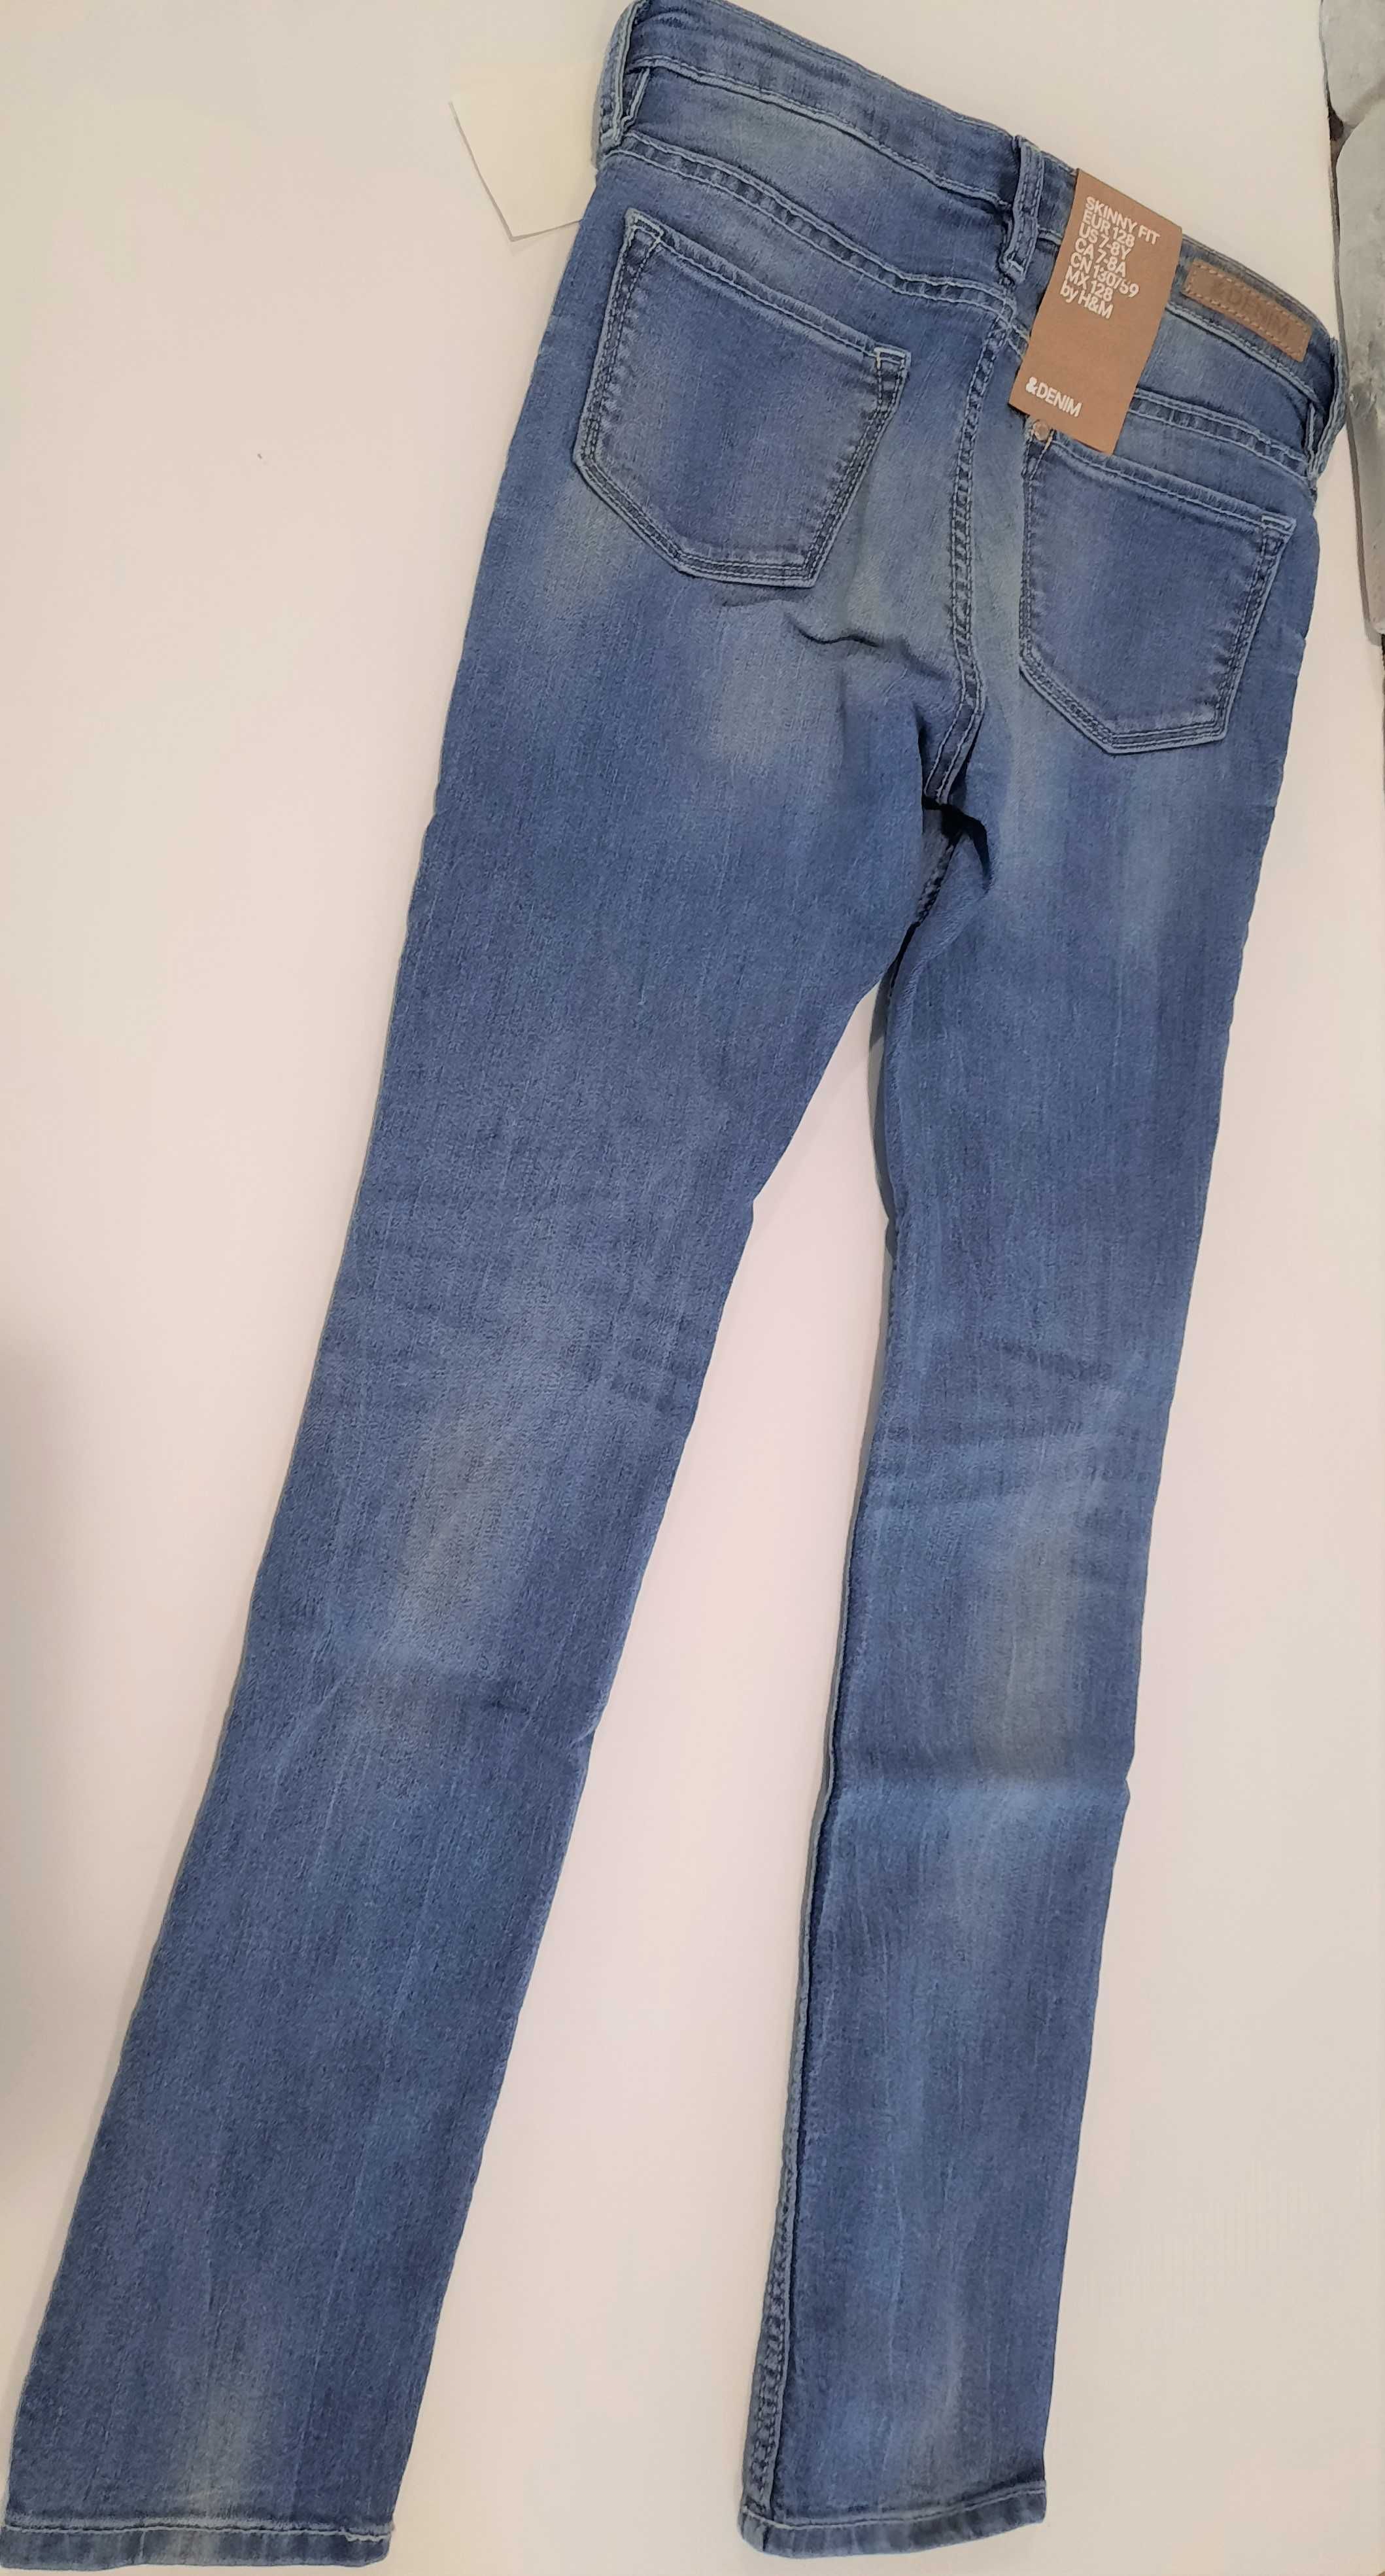 Dżinsy Skinny Fit roz 128 H&M jeansy spodnie dżinsowe jeansowe rurki